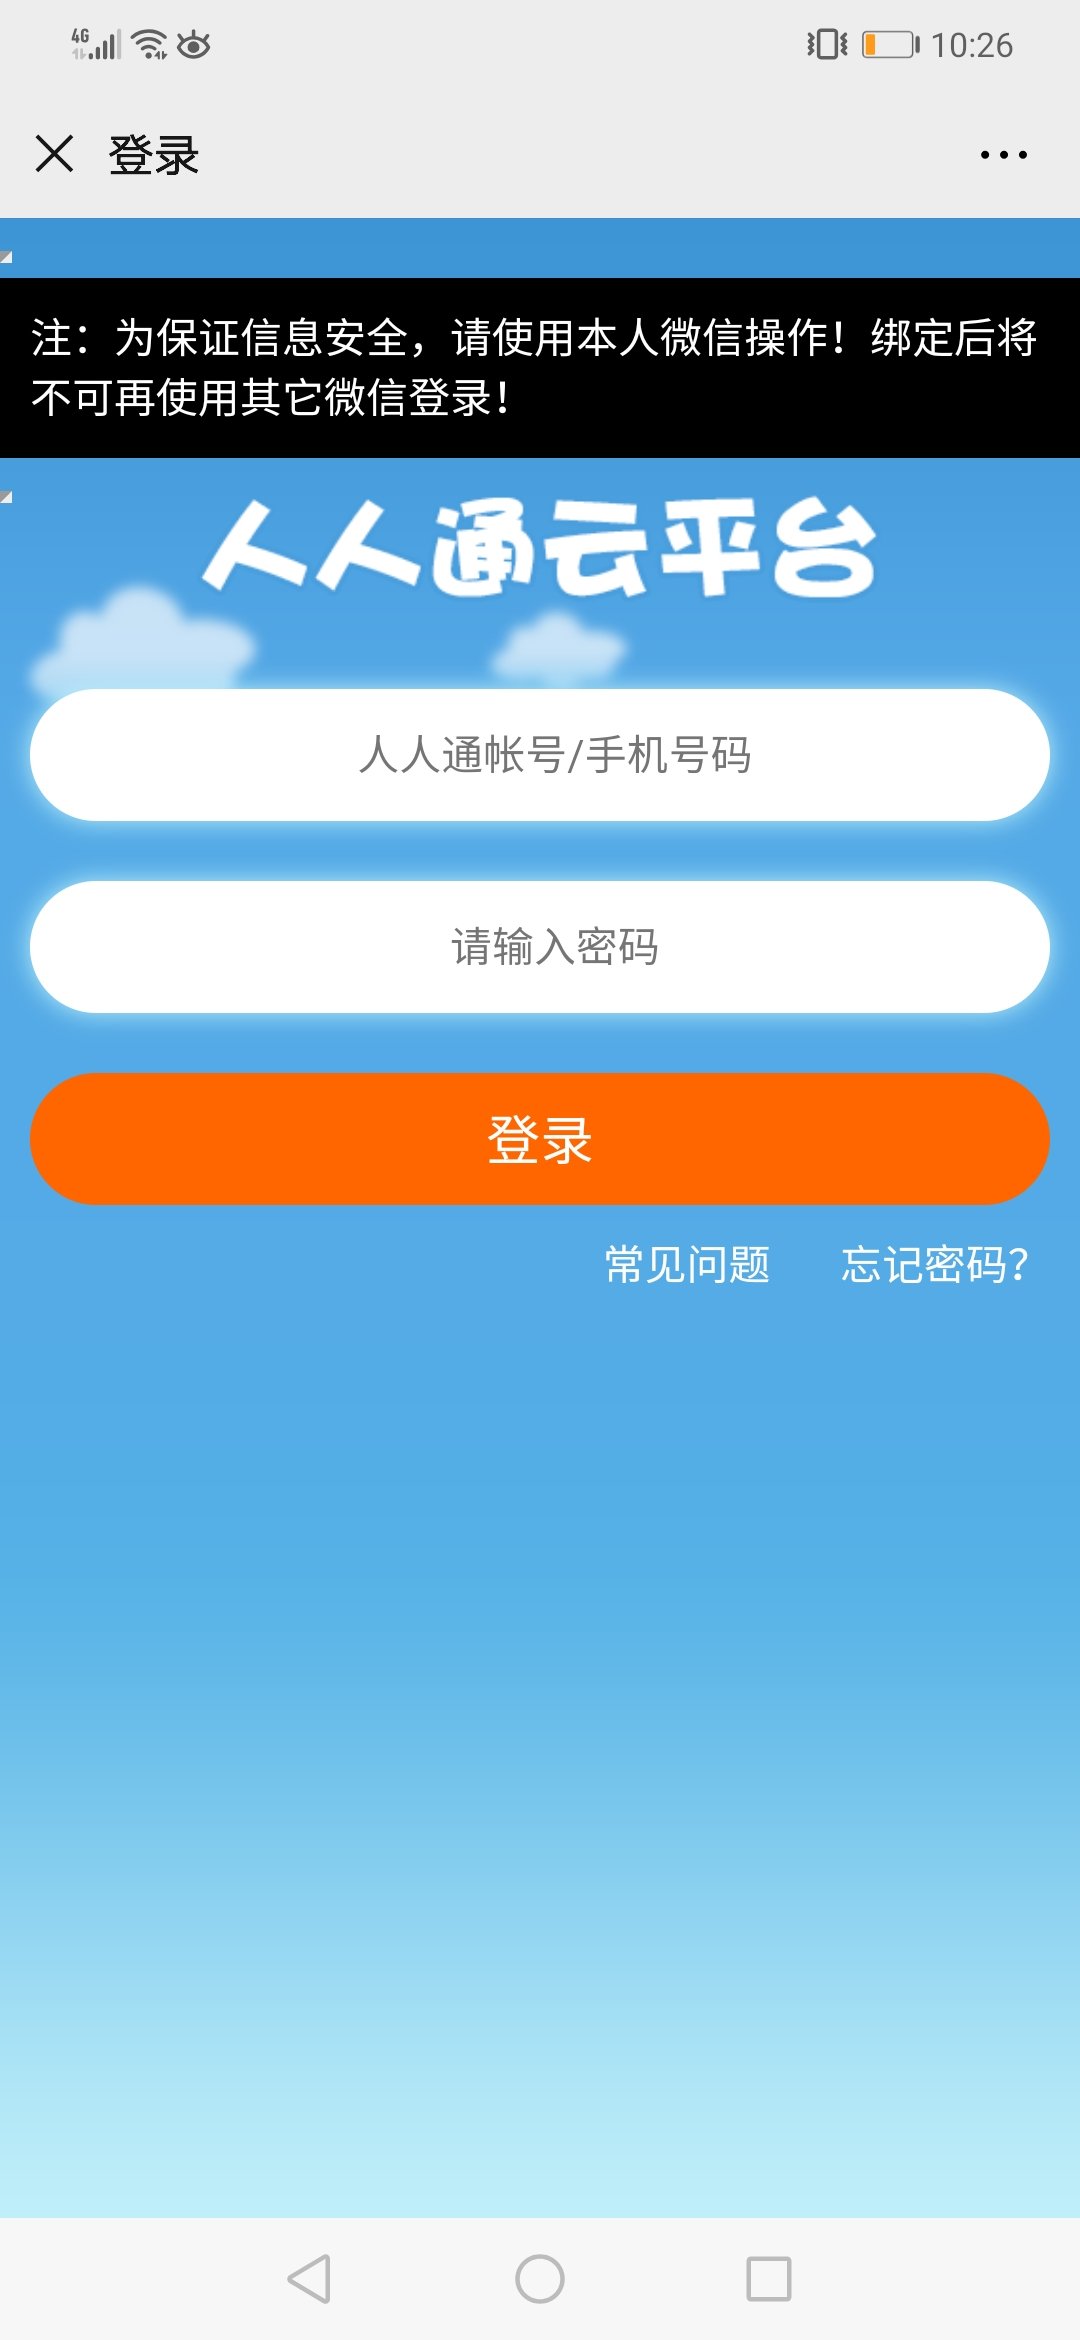 韩国手机苹果id地址资料怎么填写_韩国苹果id注册地址_苹果id改香港怎么填写